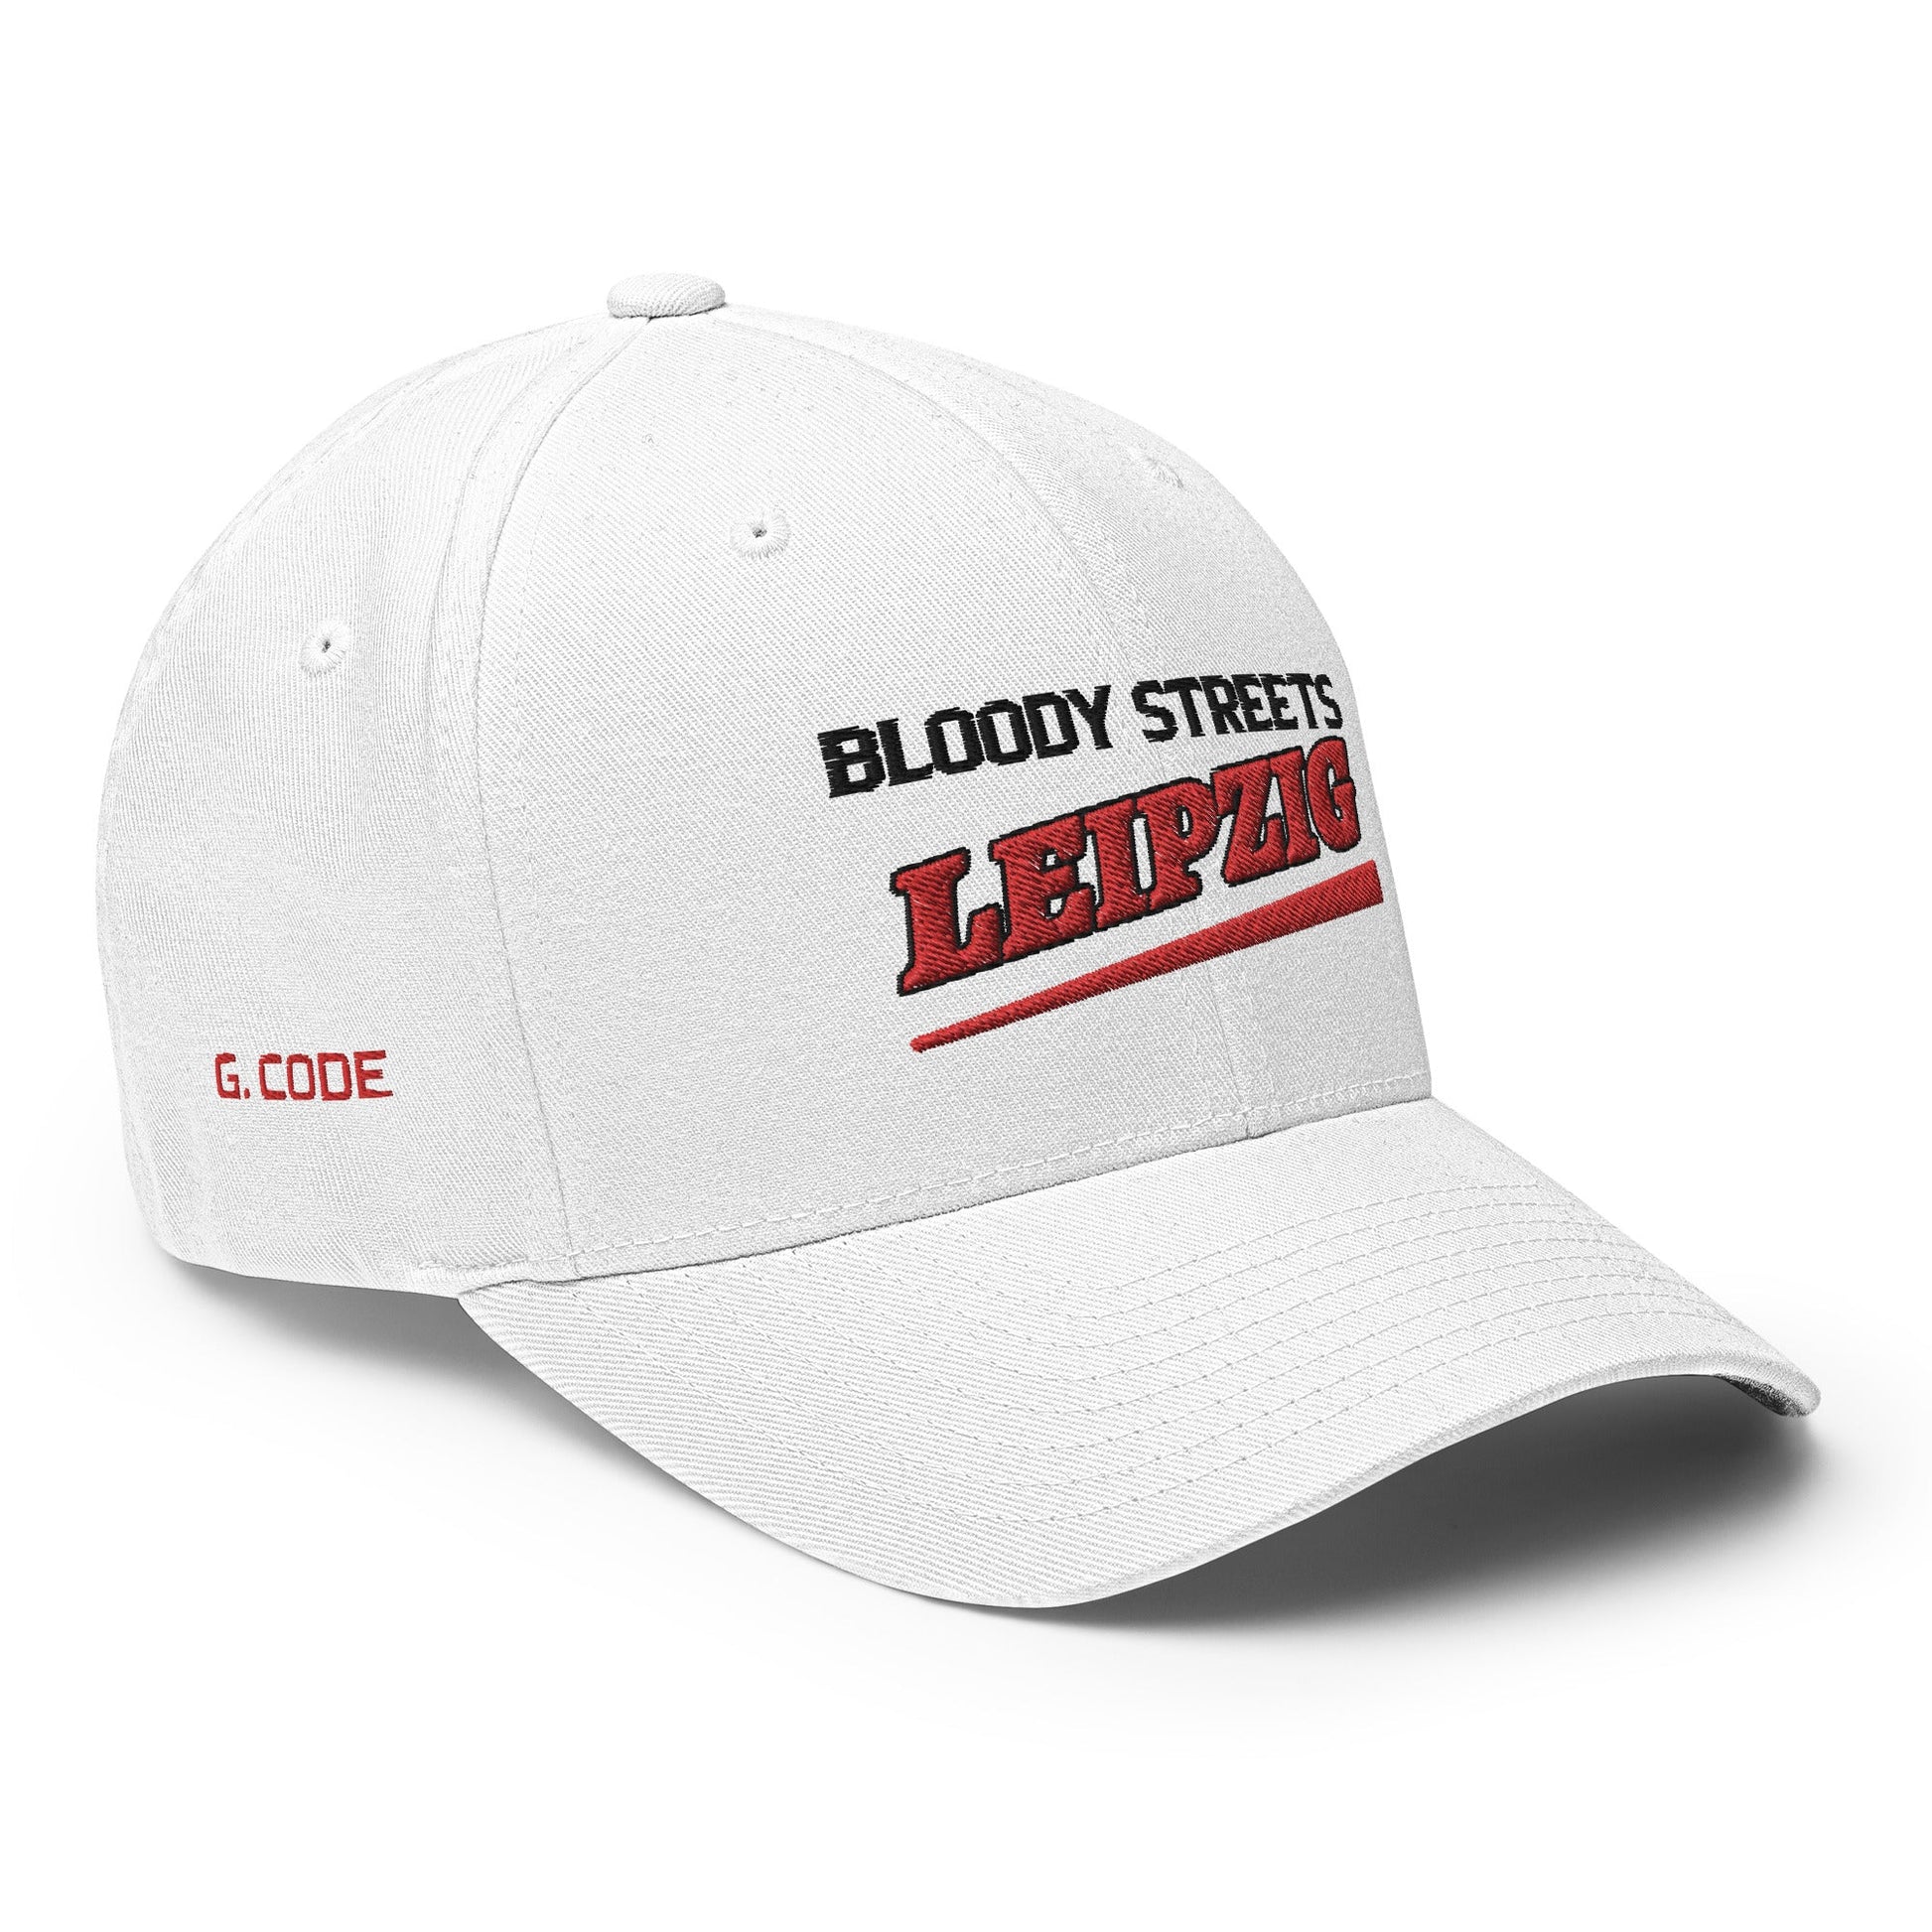 BS CITY Leipzig Crew Member Premium Red DAD CAP - BLOODY-STREETS.DE Streetwear Herren und Damen Hoodies, T-Shirts, Pullis